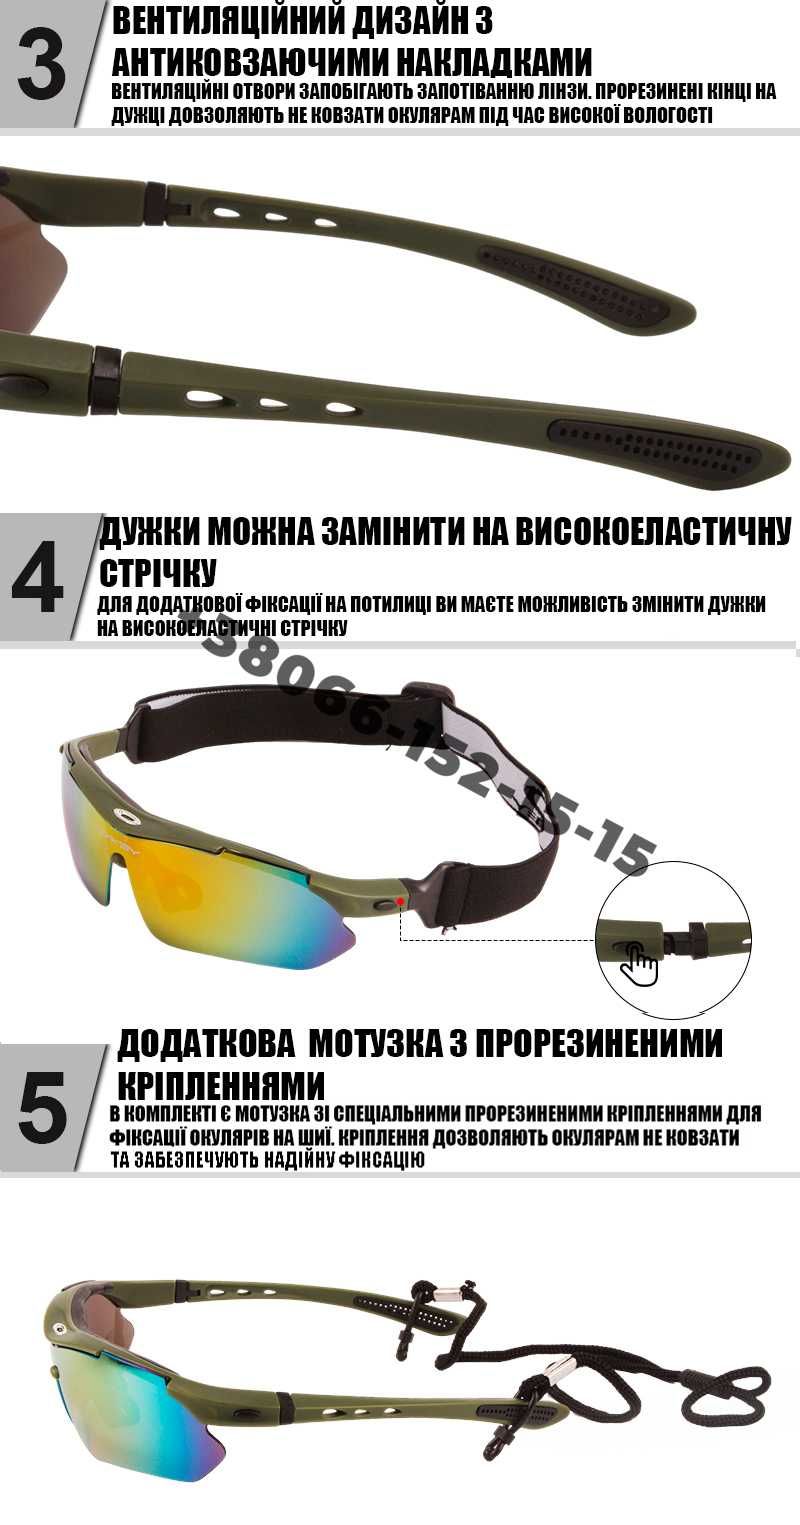 Защитные очки тактические армейские с поляризацией Oakley 5 линз.дроп